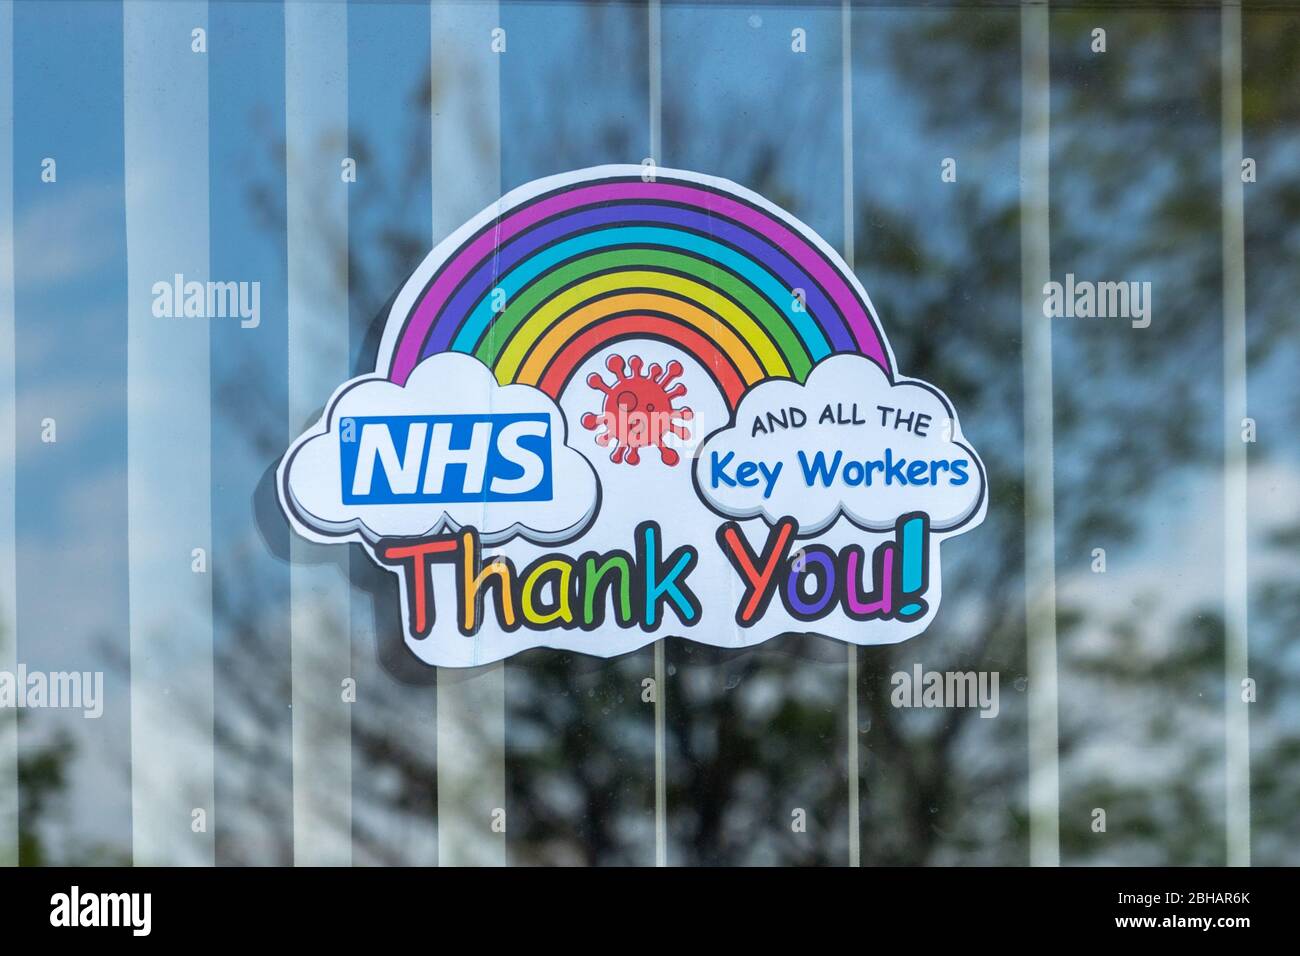 Un arco iris en una ventana de casas para agradecer al NHS y a los trabajadores clave durante el aislamiento del Coronavirus o Covid-19 Foto de stock